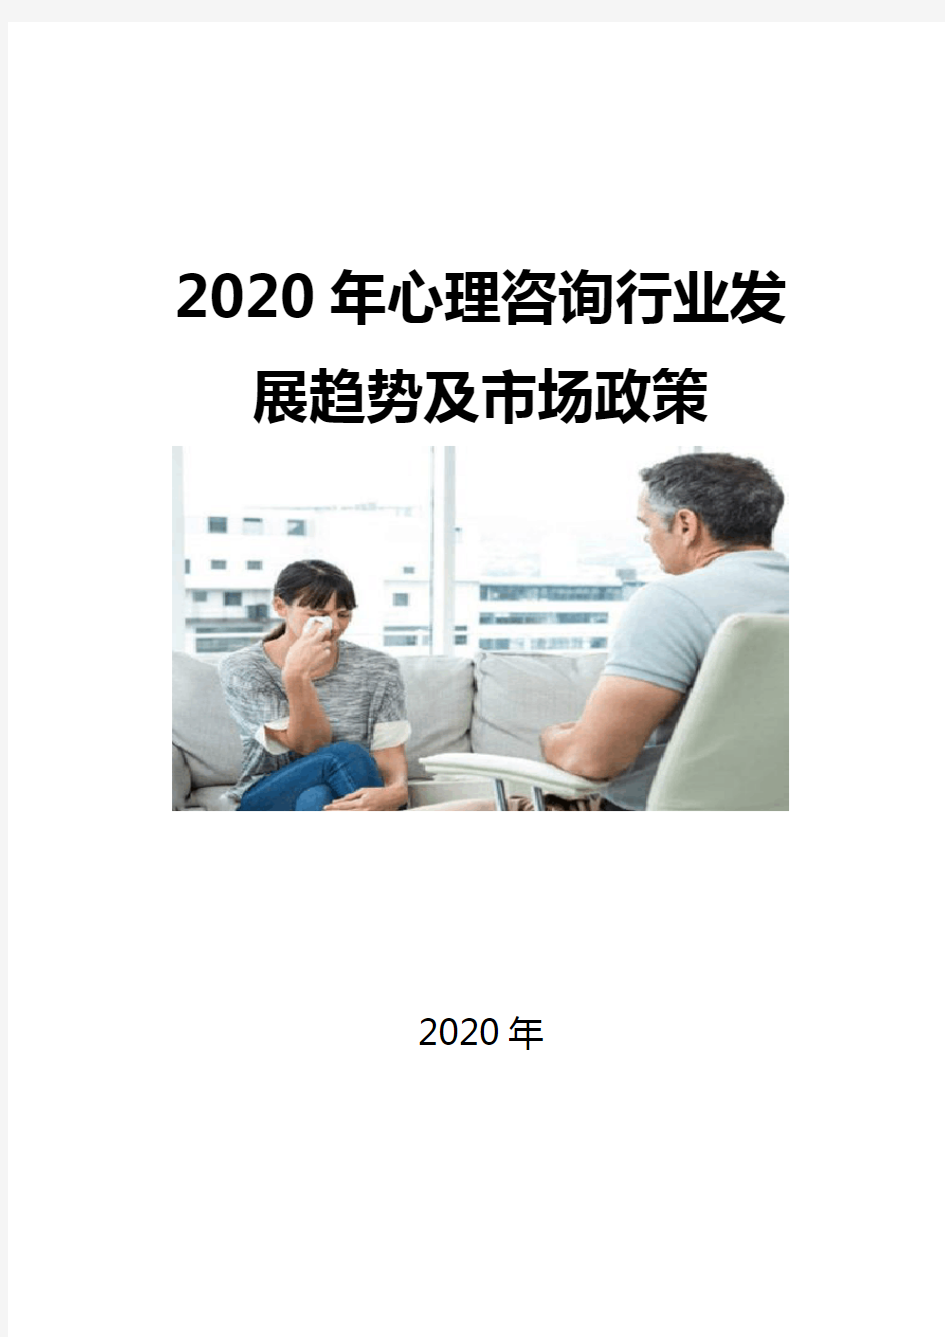 2020心理咨询行业发展趋势及市场政策